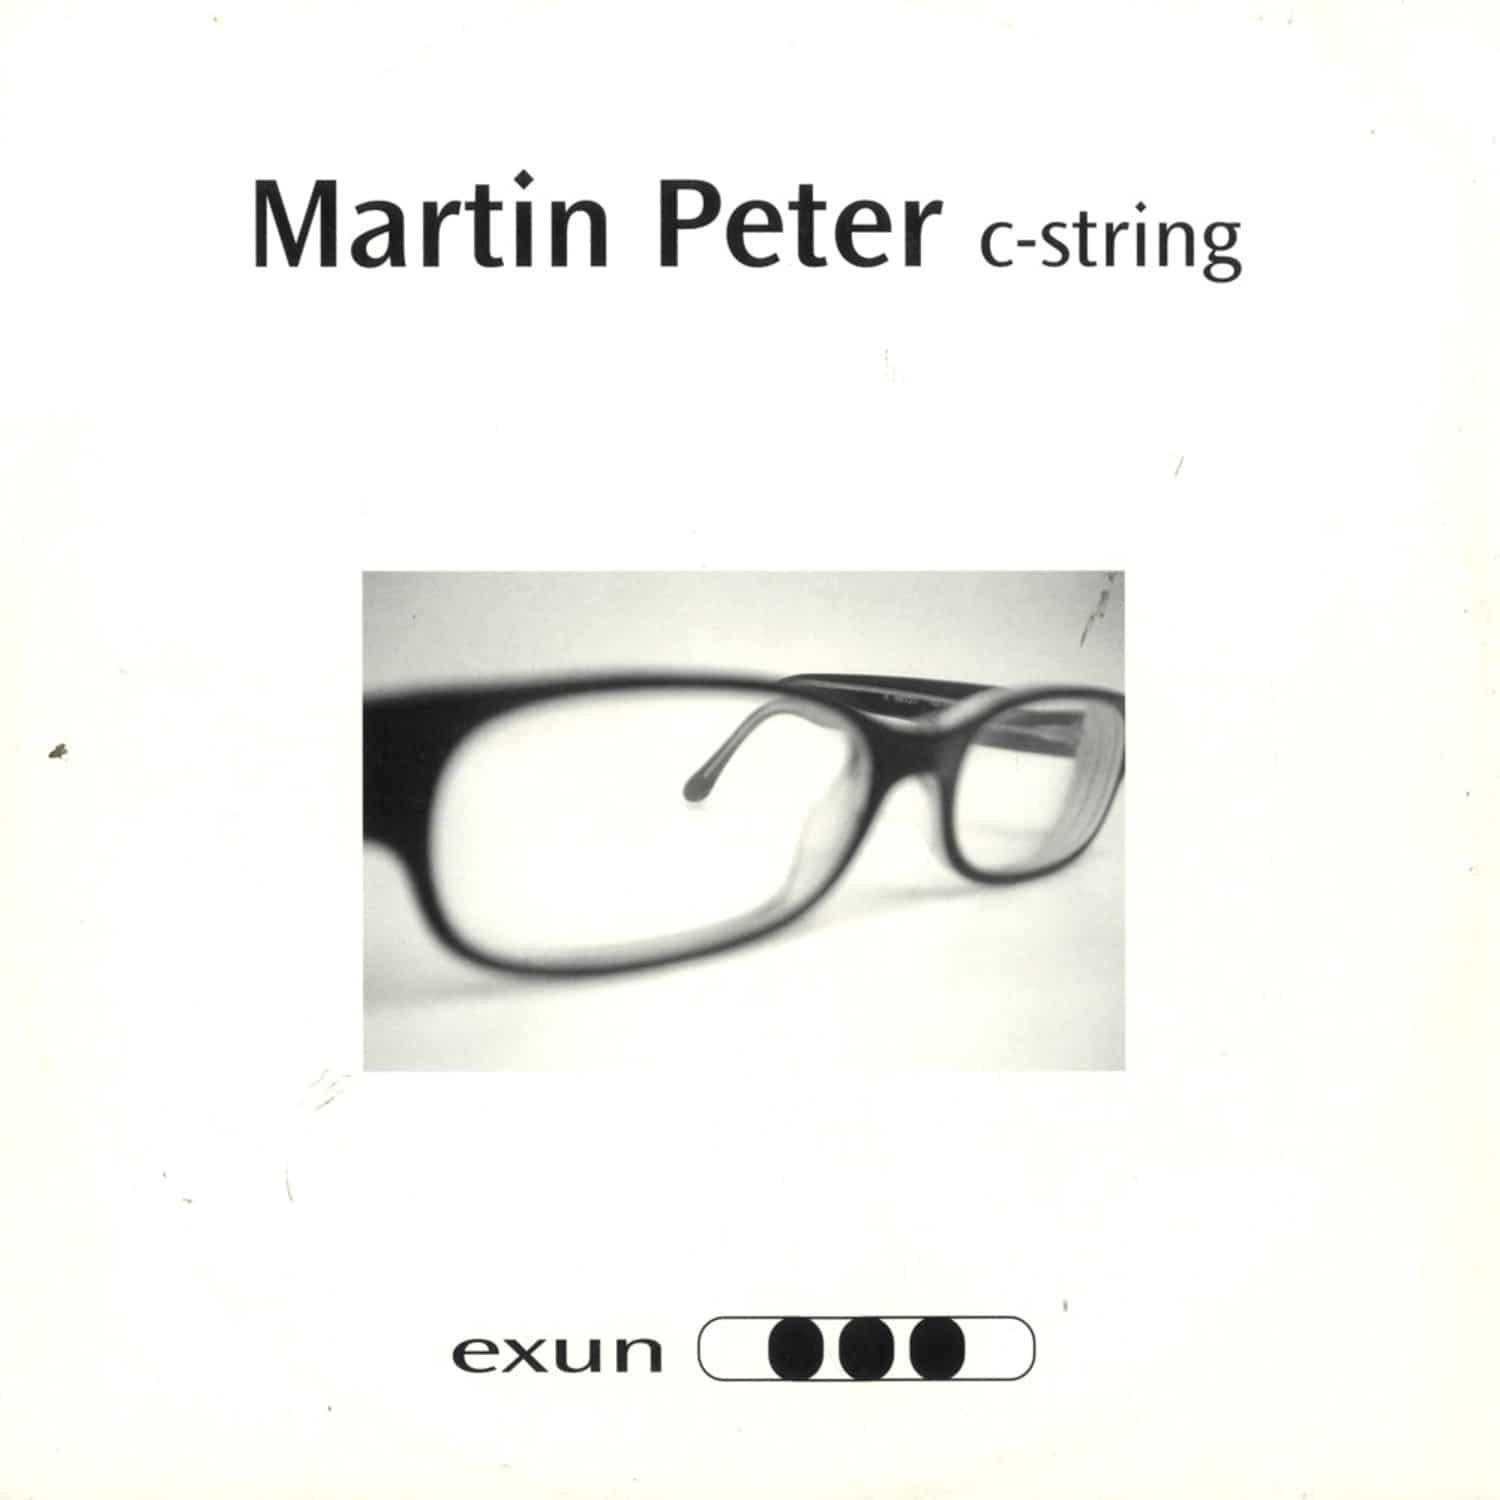 Martin Peter - C-STRING